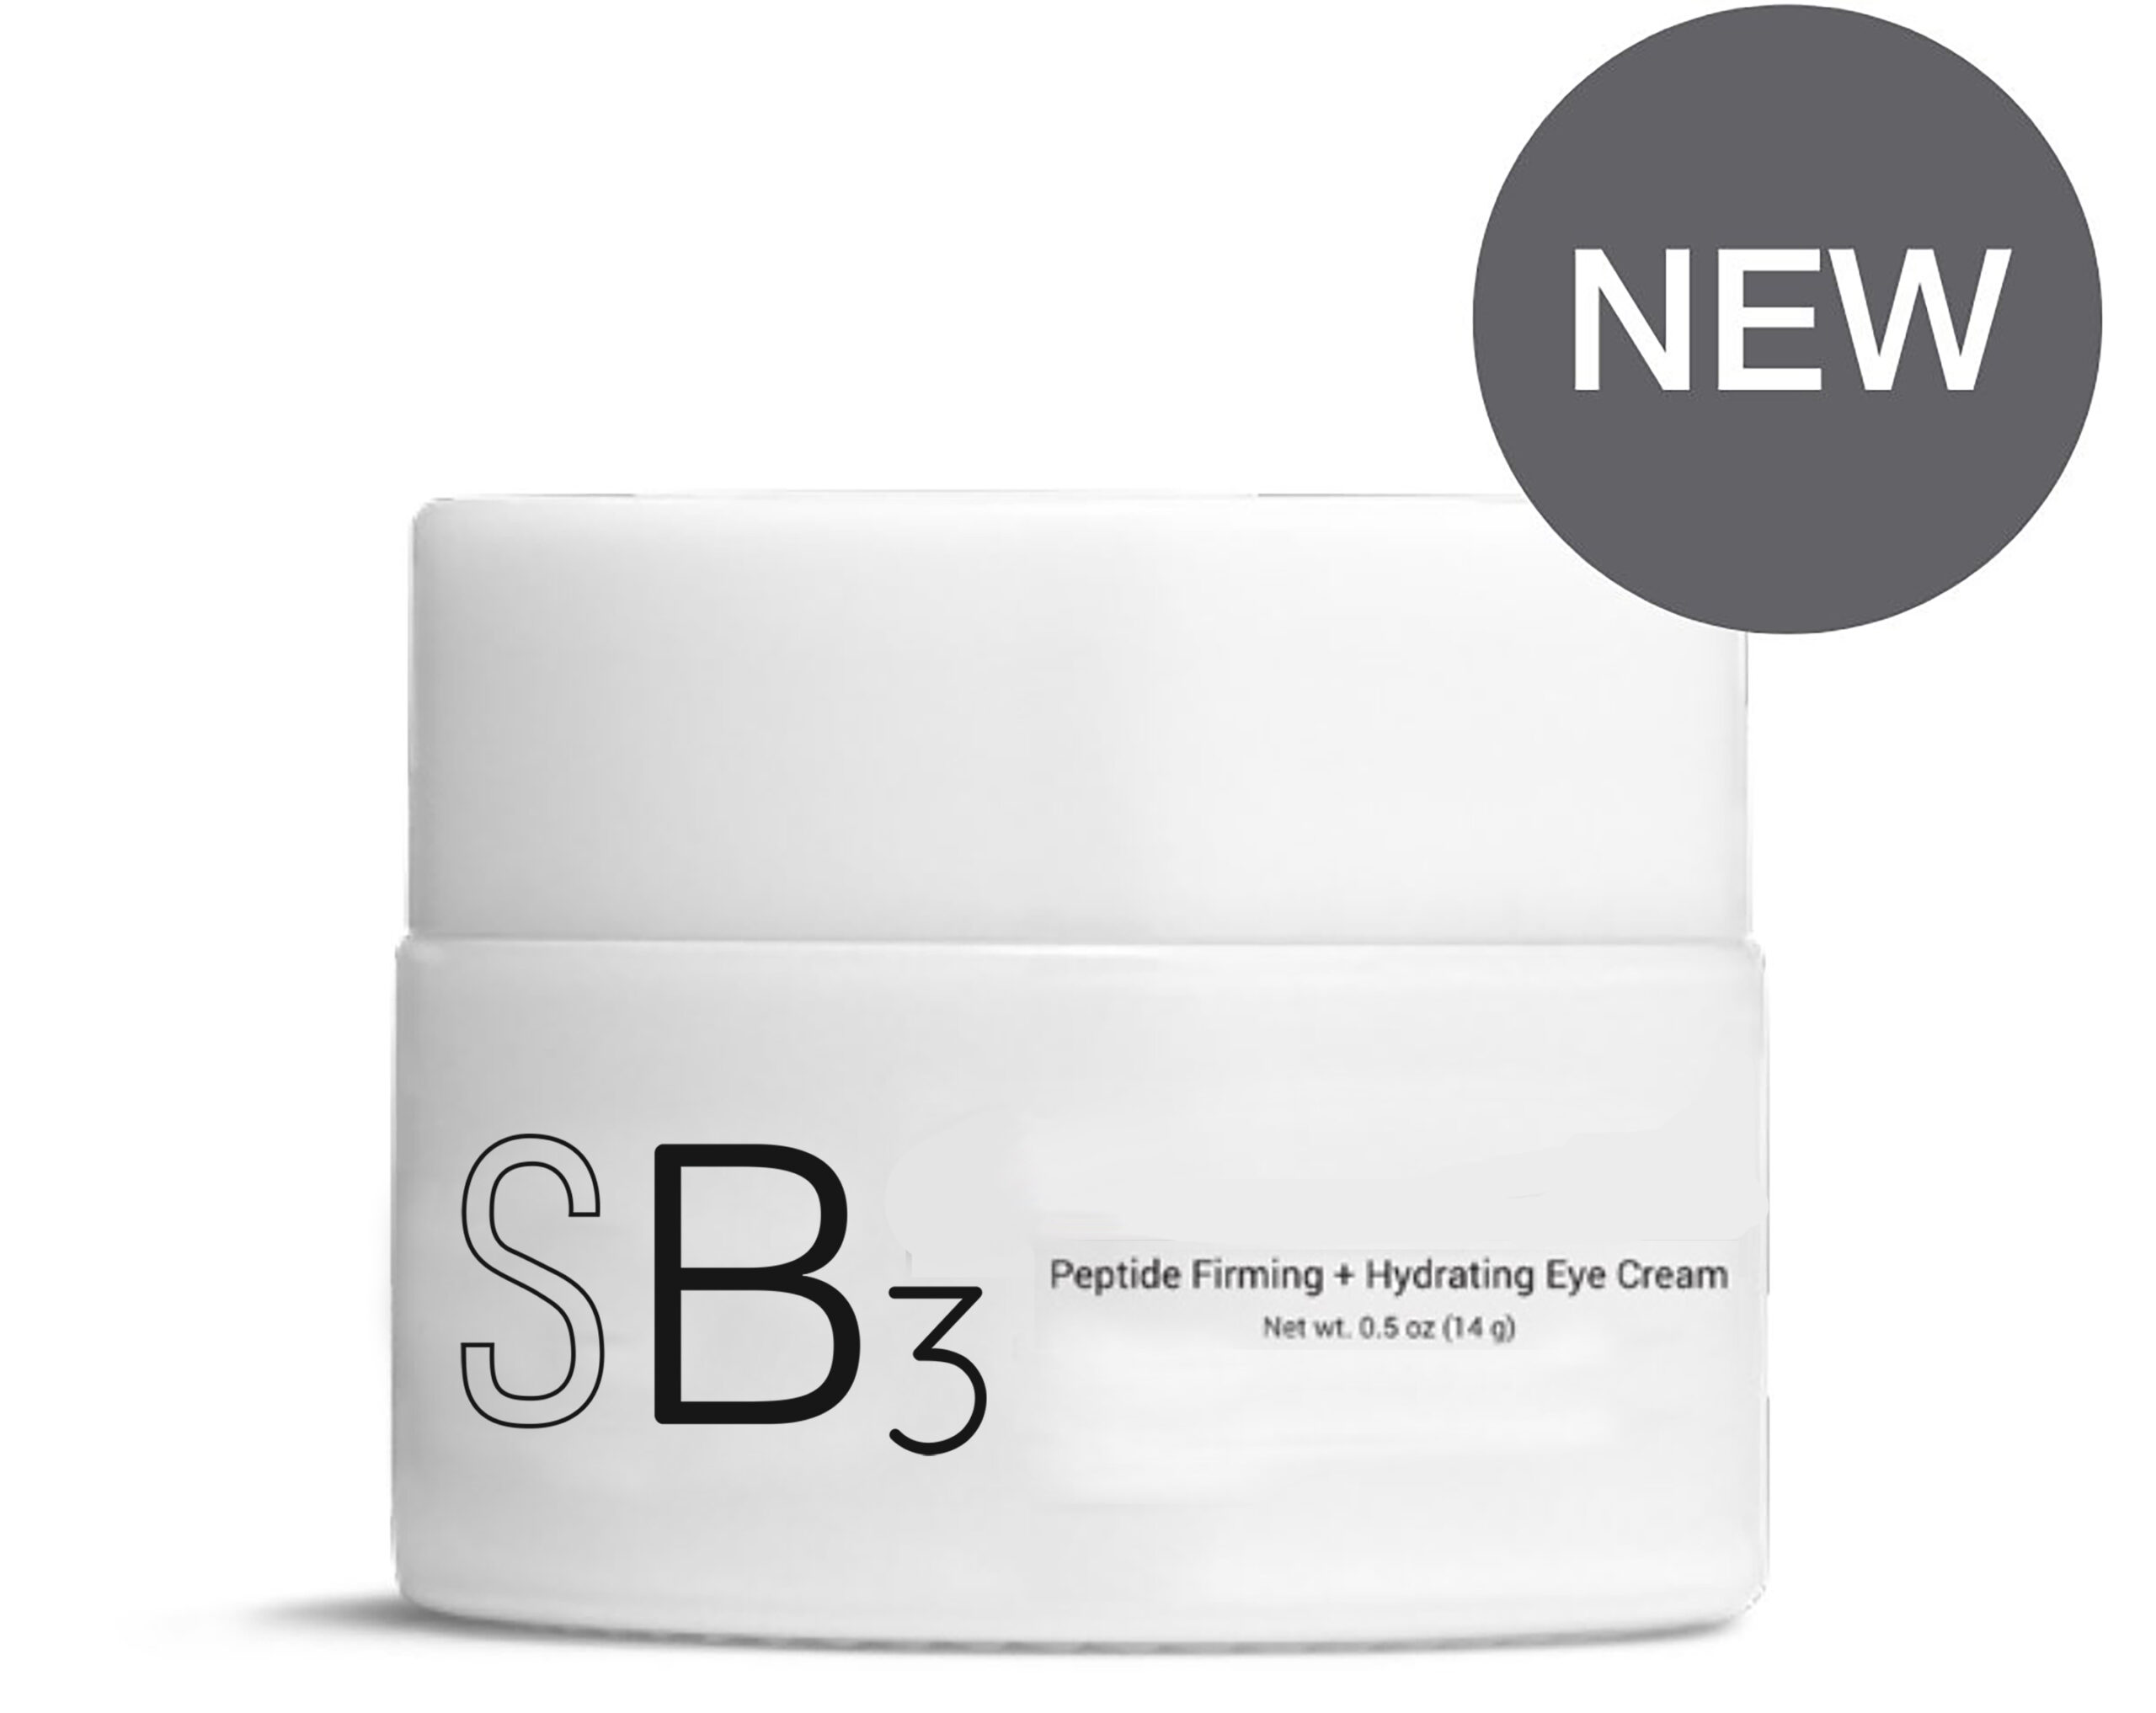 SB3 Peptide Firming + Hydrating Eye Cream